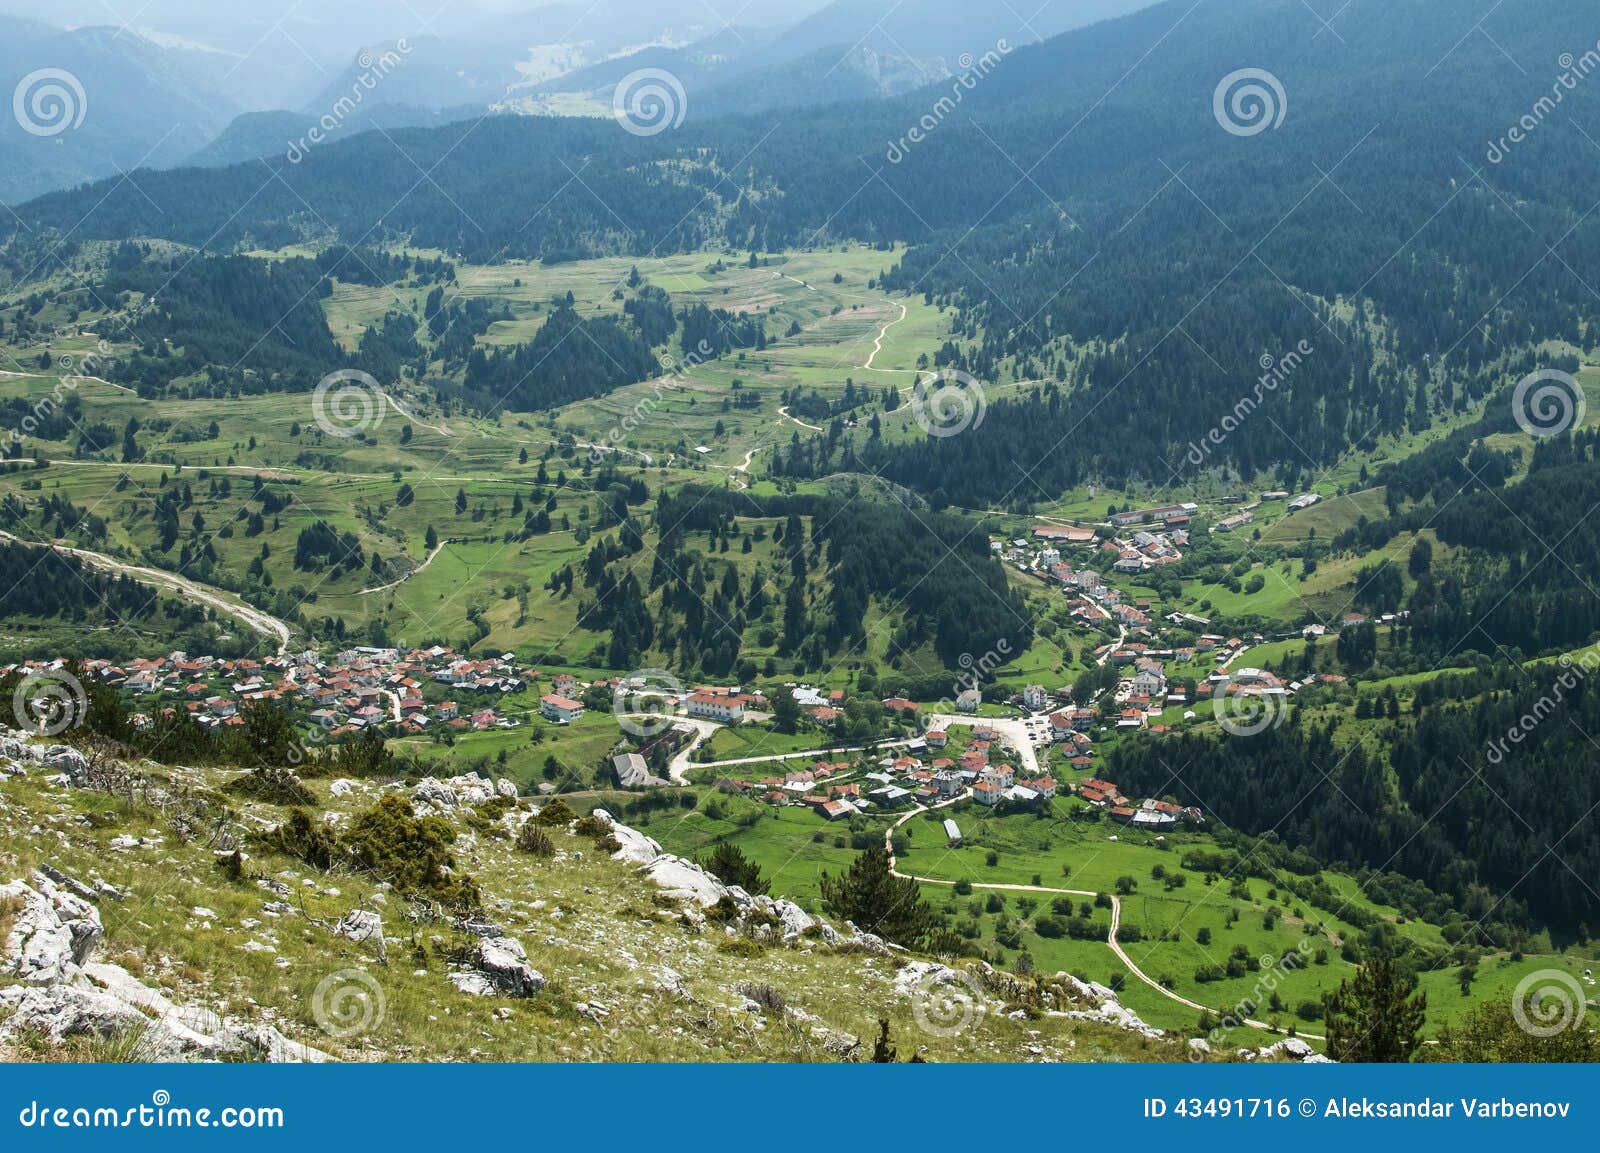 view of mountain village